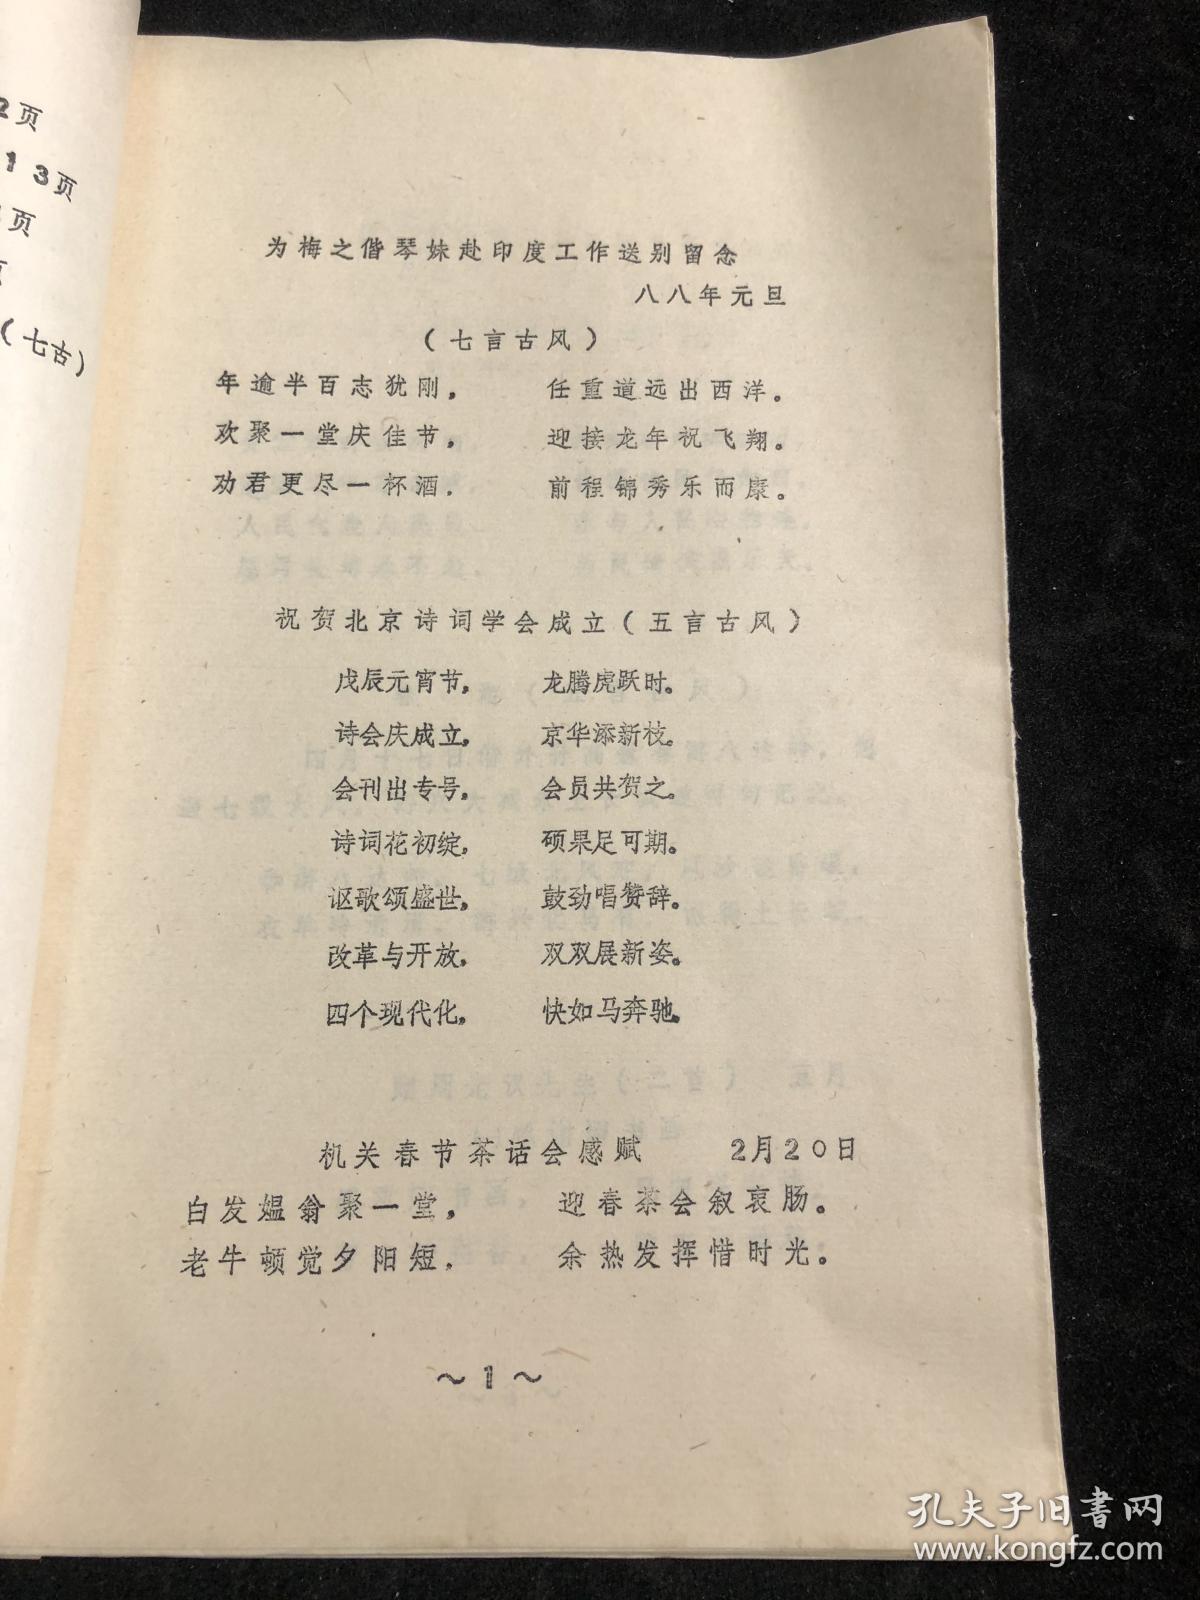 中华诗词习作集 二  赵一平。